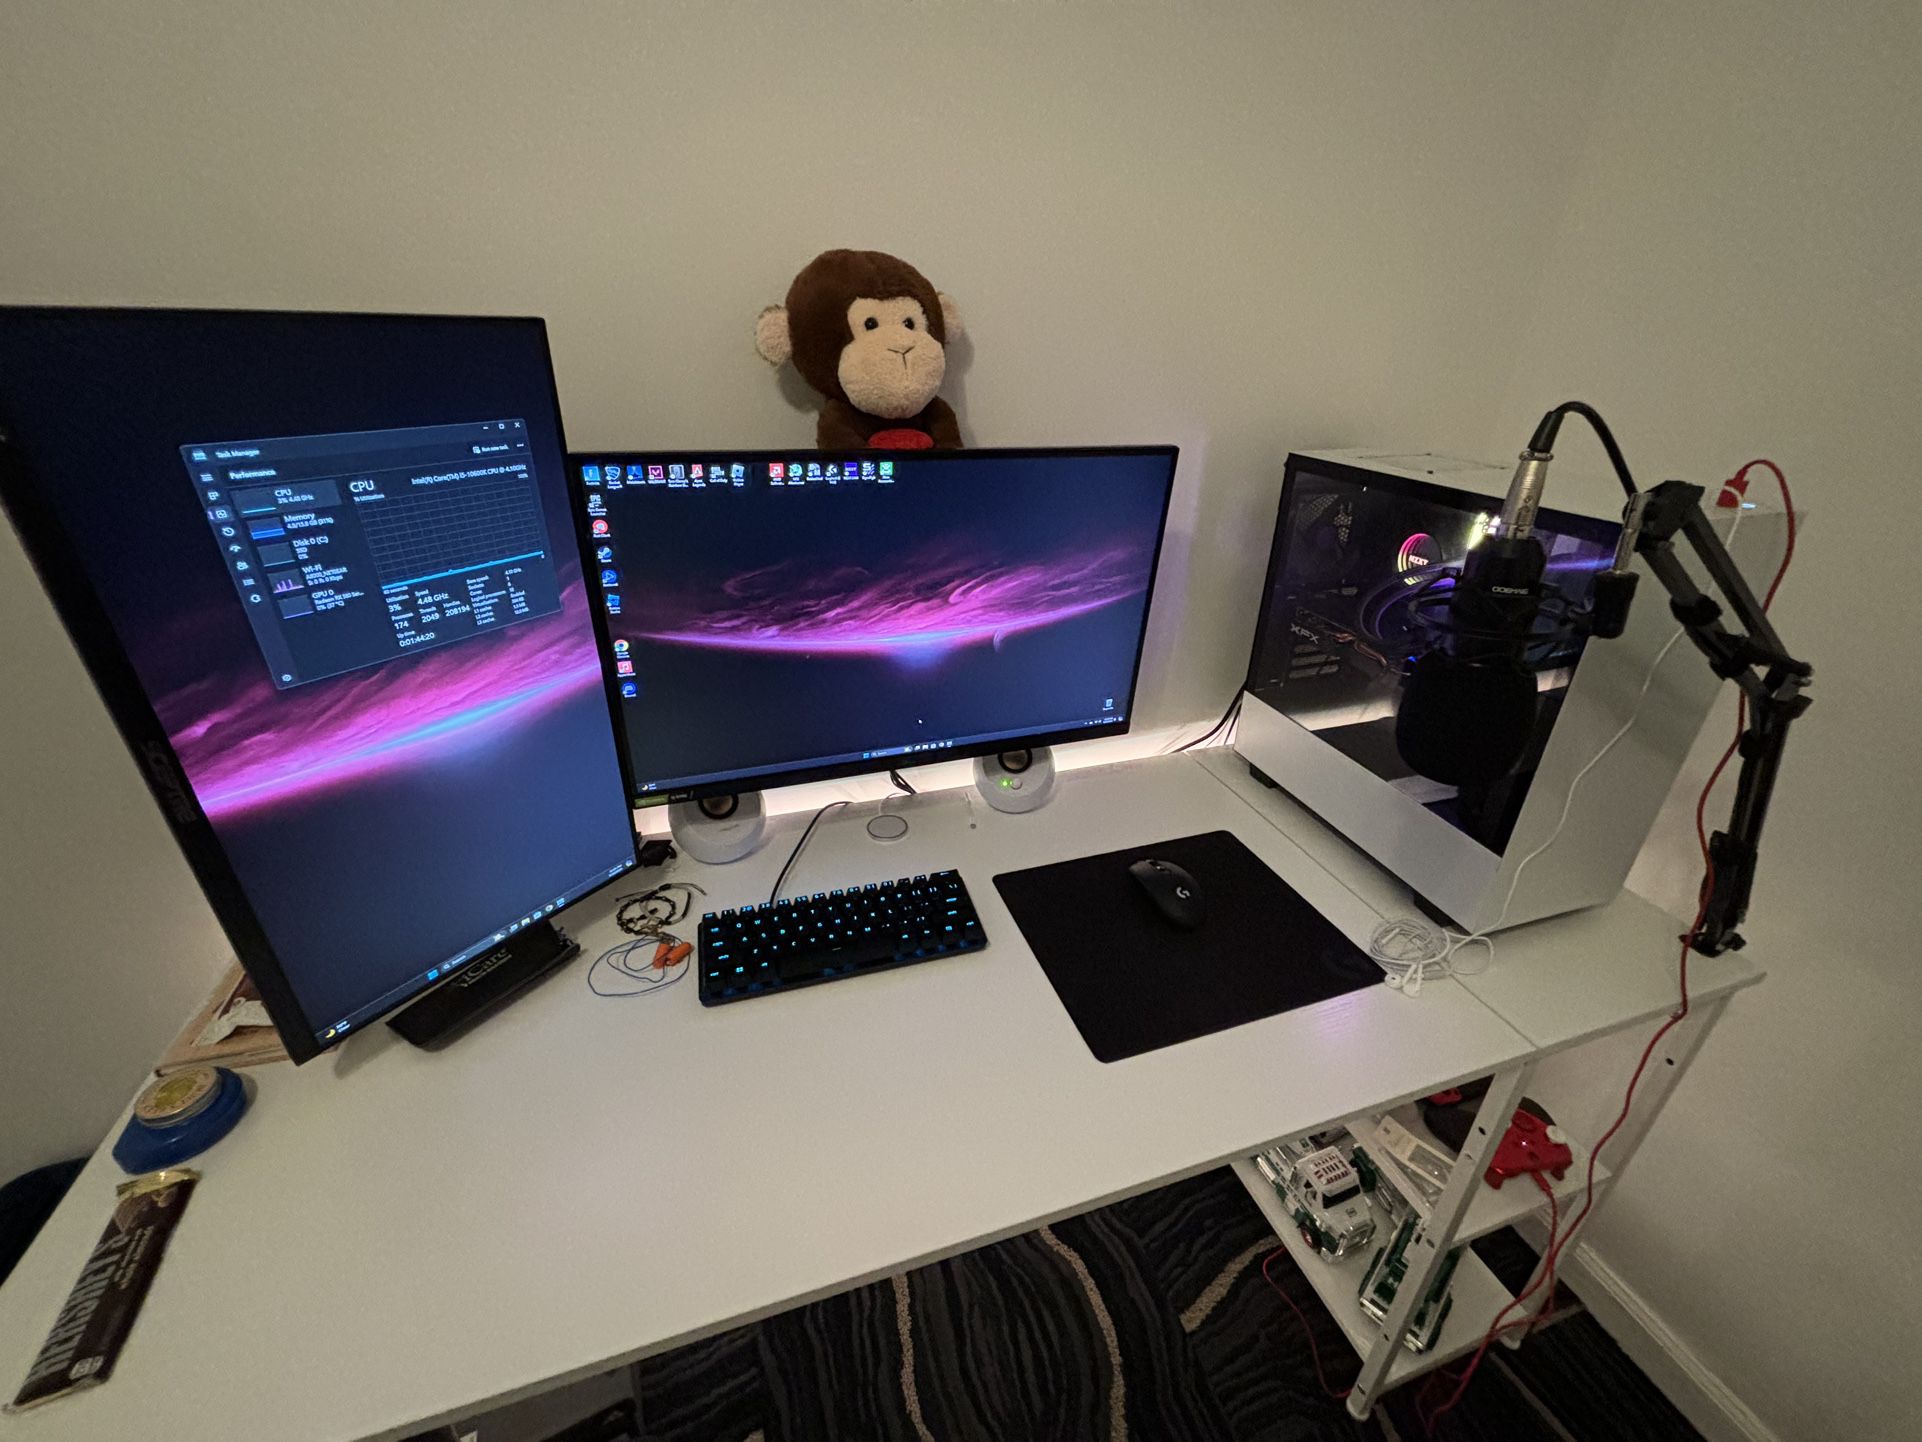 Whole PC Setup (PC Included)